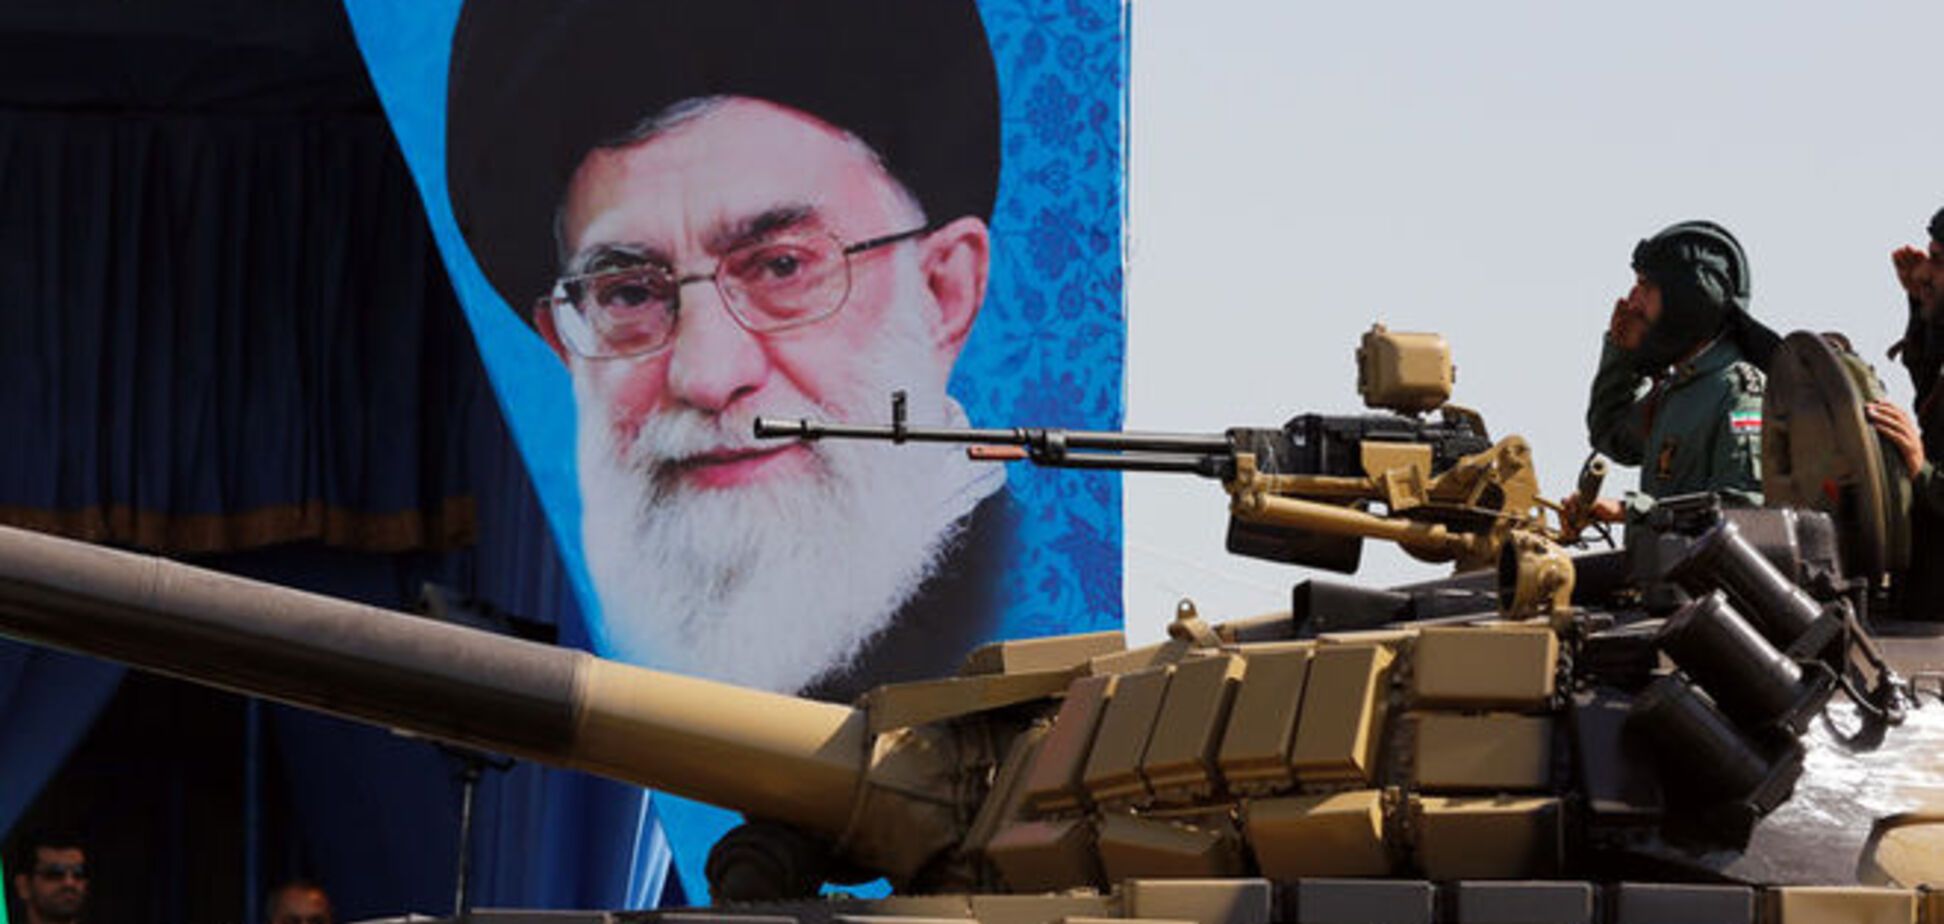 У иранского лидера аятоллы Хаменеи отказали внутренние органы – СМИ